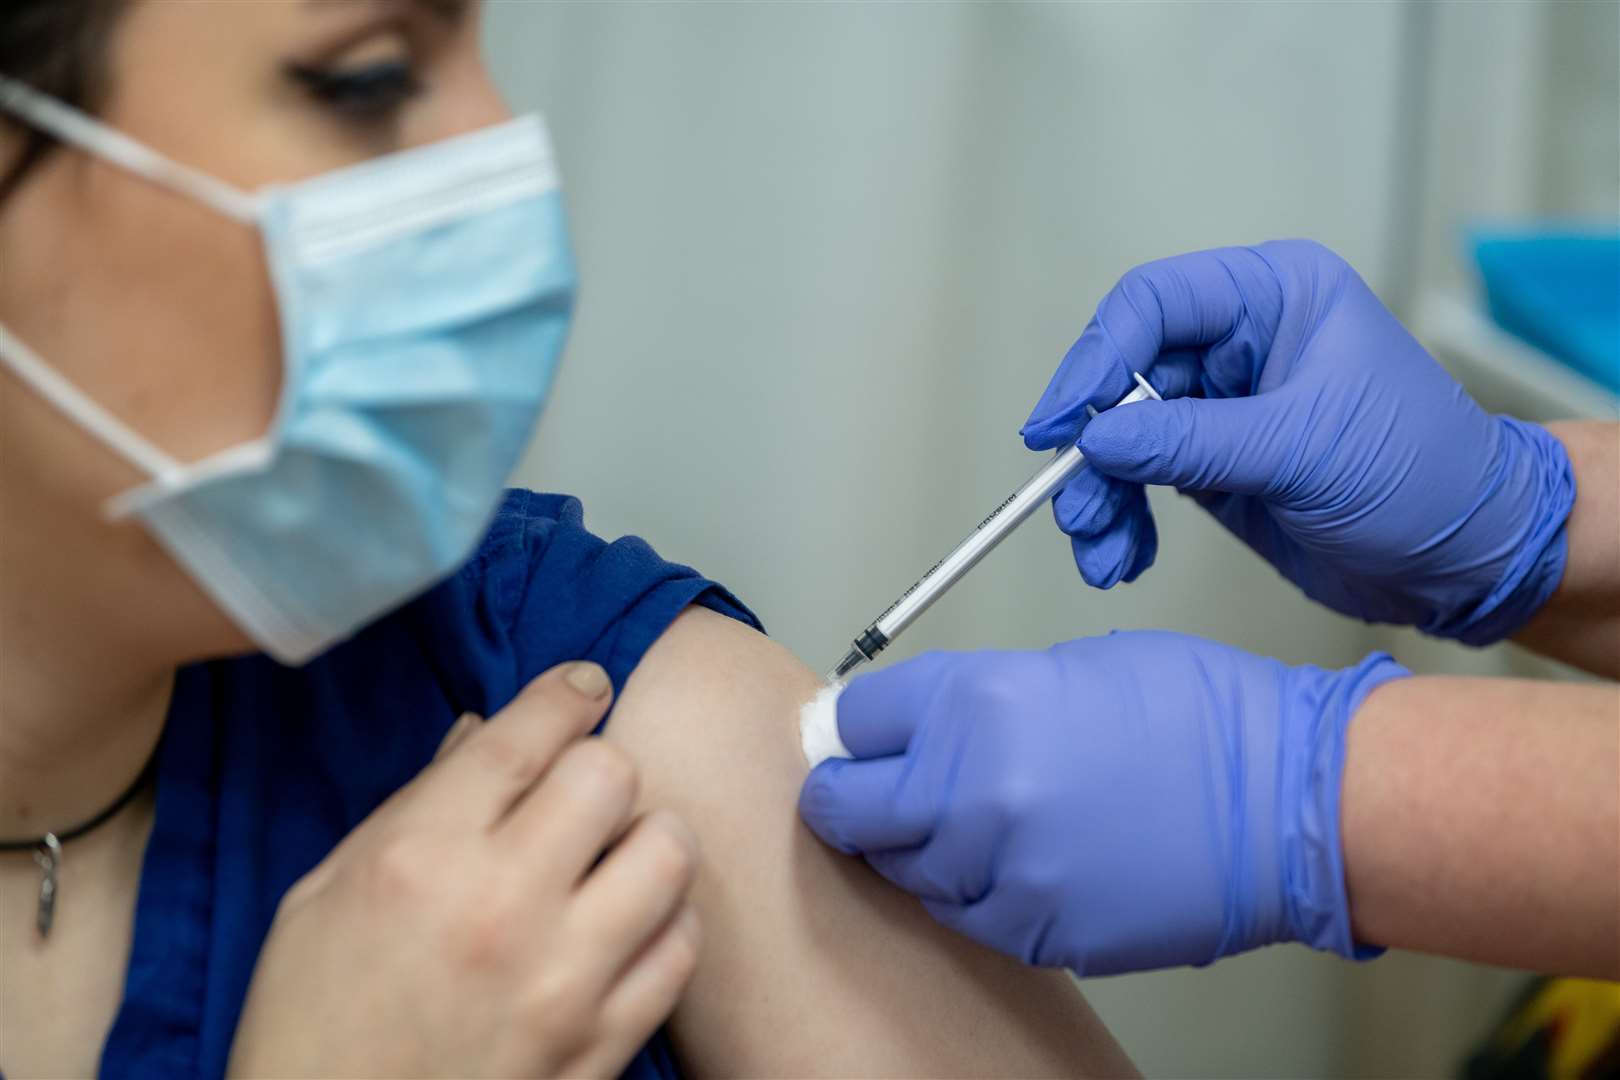 Administering the coronavirus vaccine